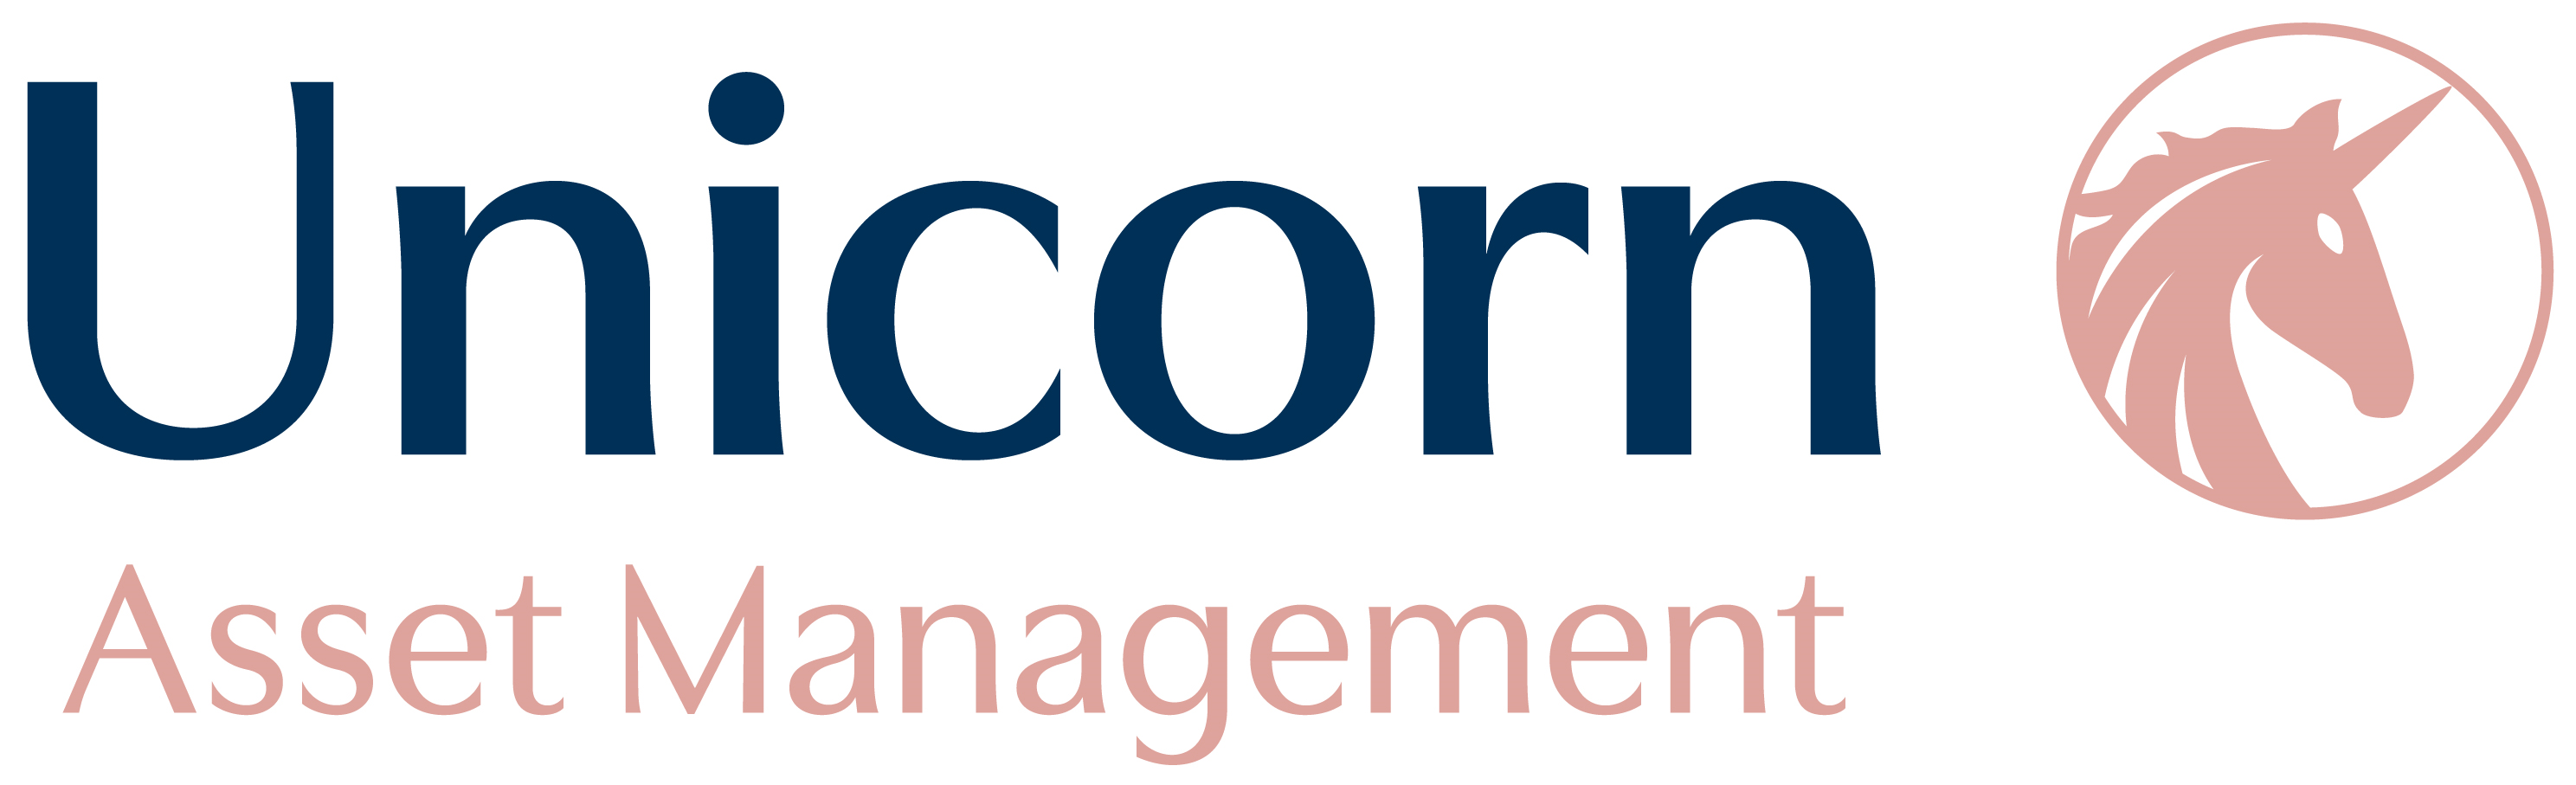 Unicorn Asset Management logo